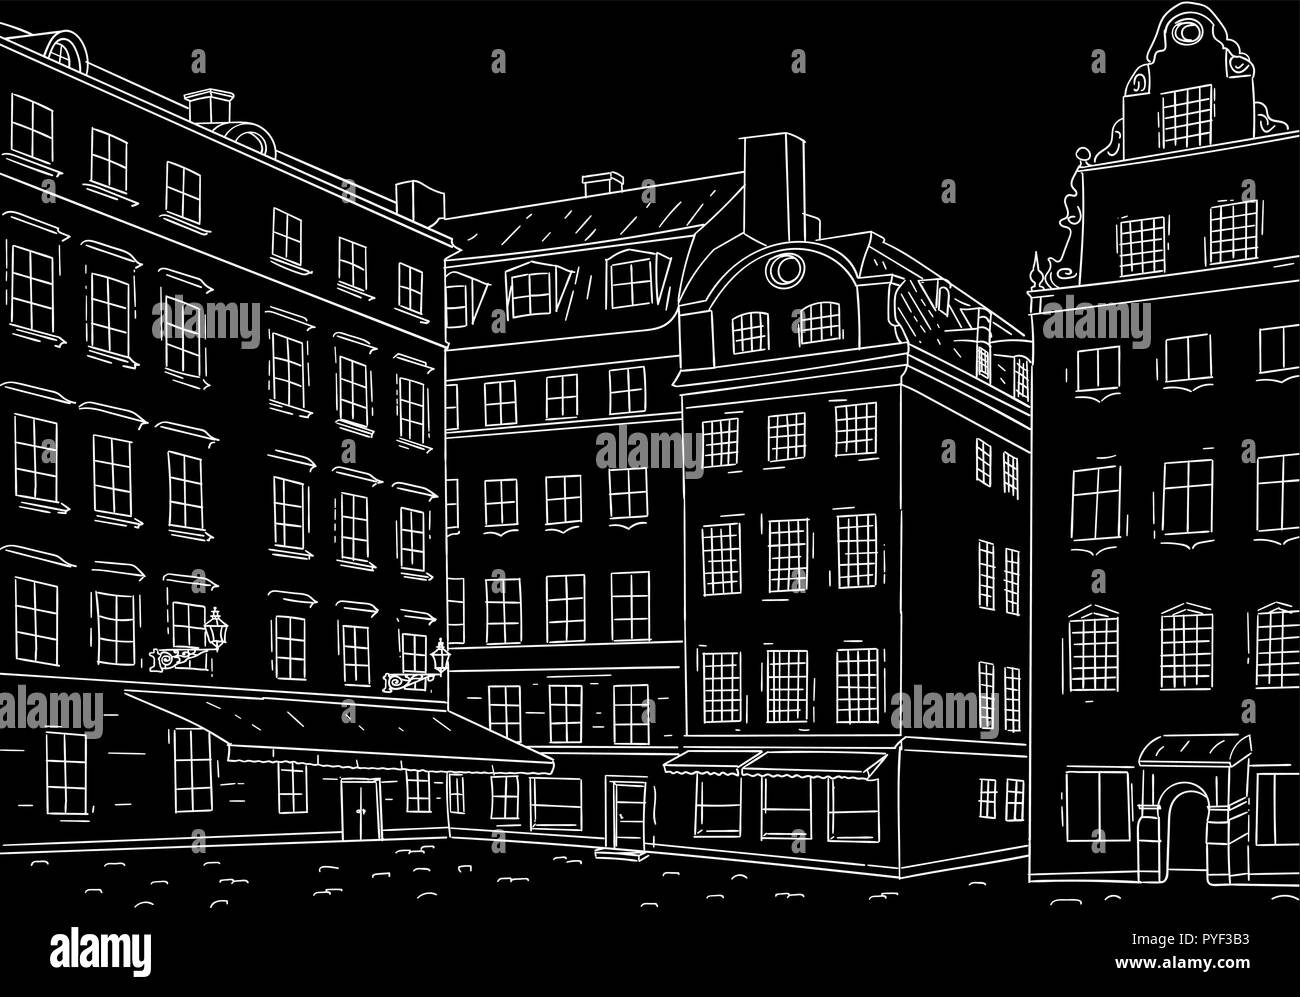 Stockholm Stortorget square. Black outline hand drawn sketch Stock Vector